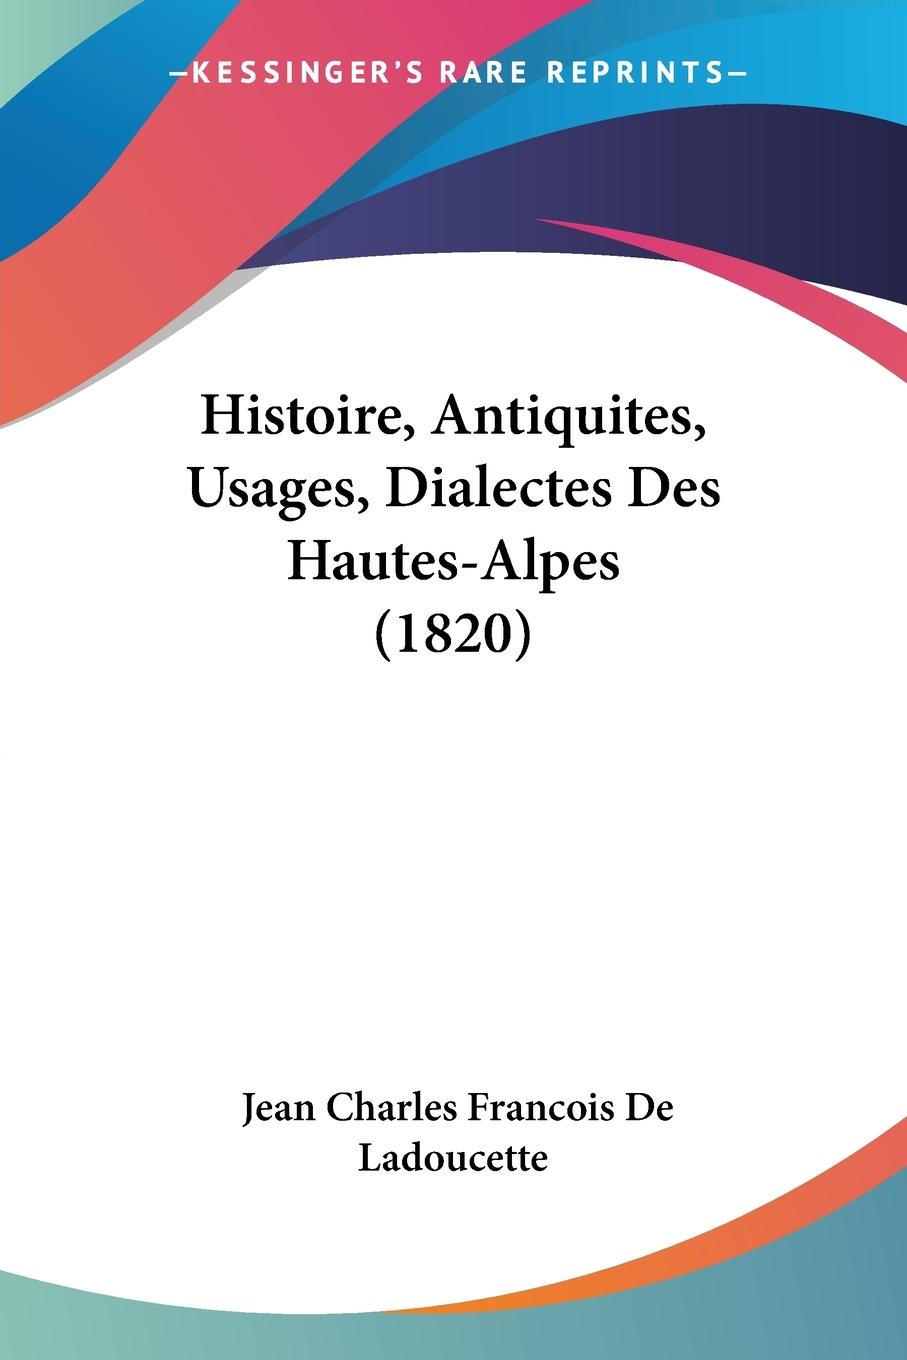 Histoire, Antiquites, Usages, Dialectes Des Hautes-Alpes (1820) - De Ladoucette, Jean Charles Francois